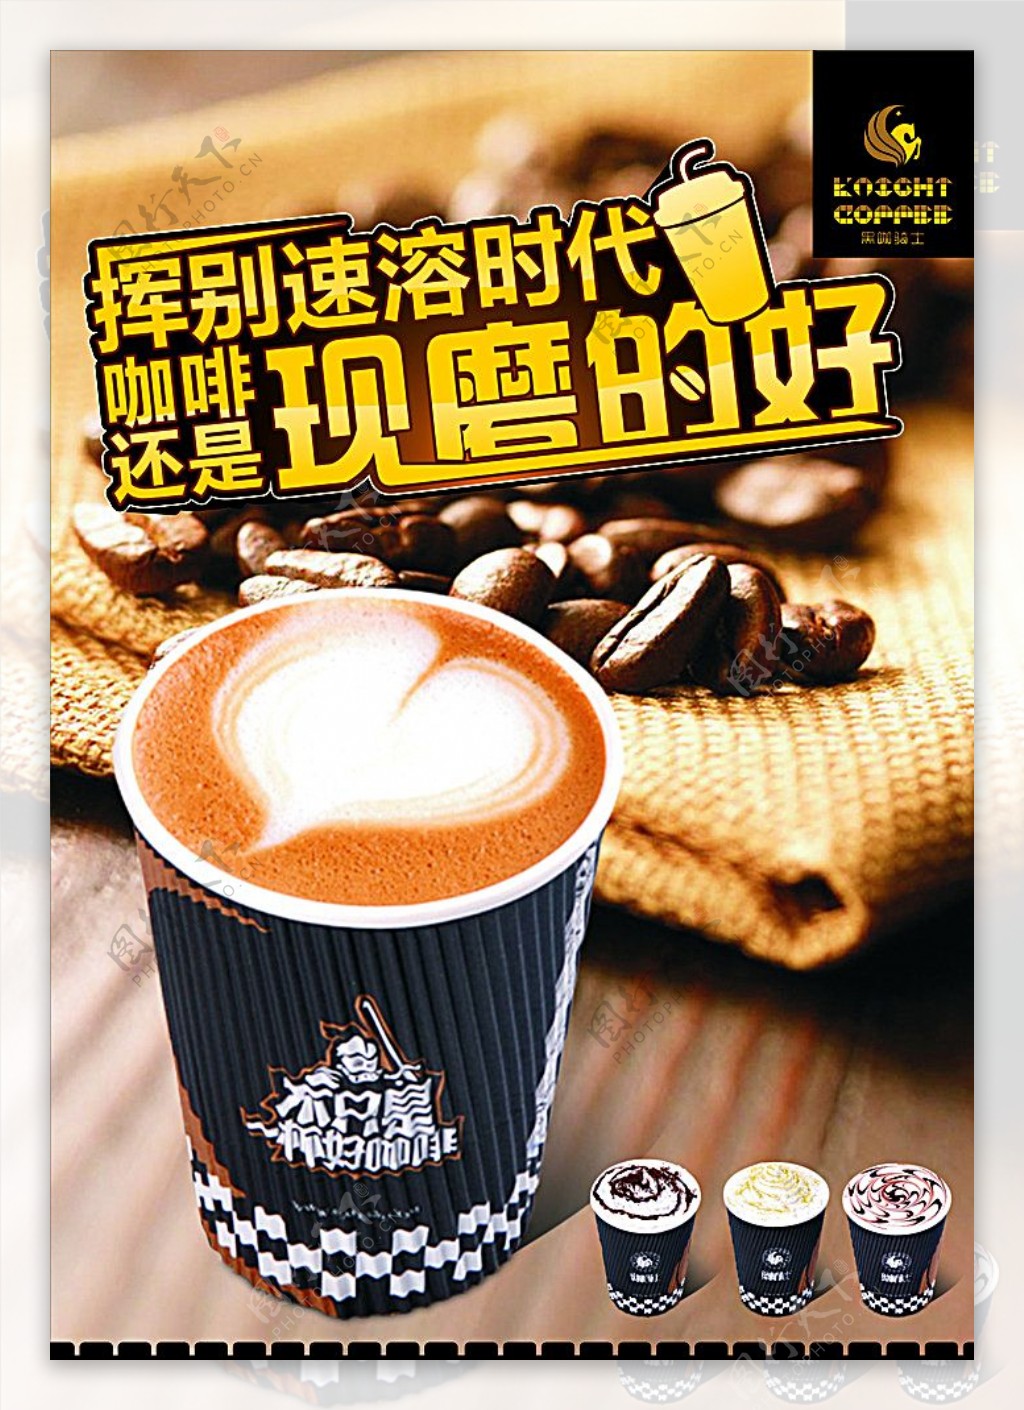 现磨咖啡奶茶广告图片